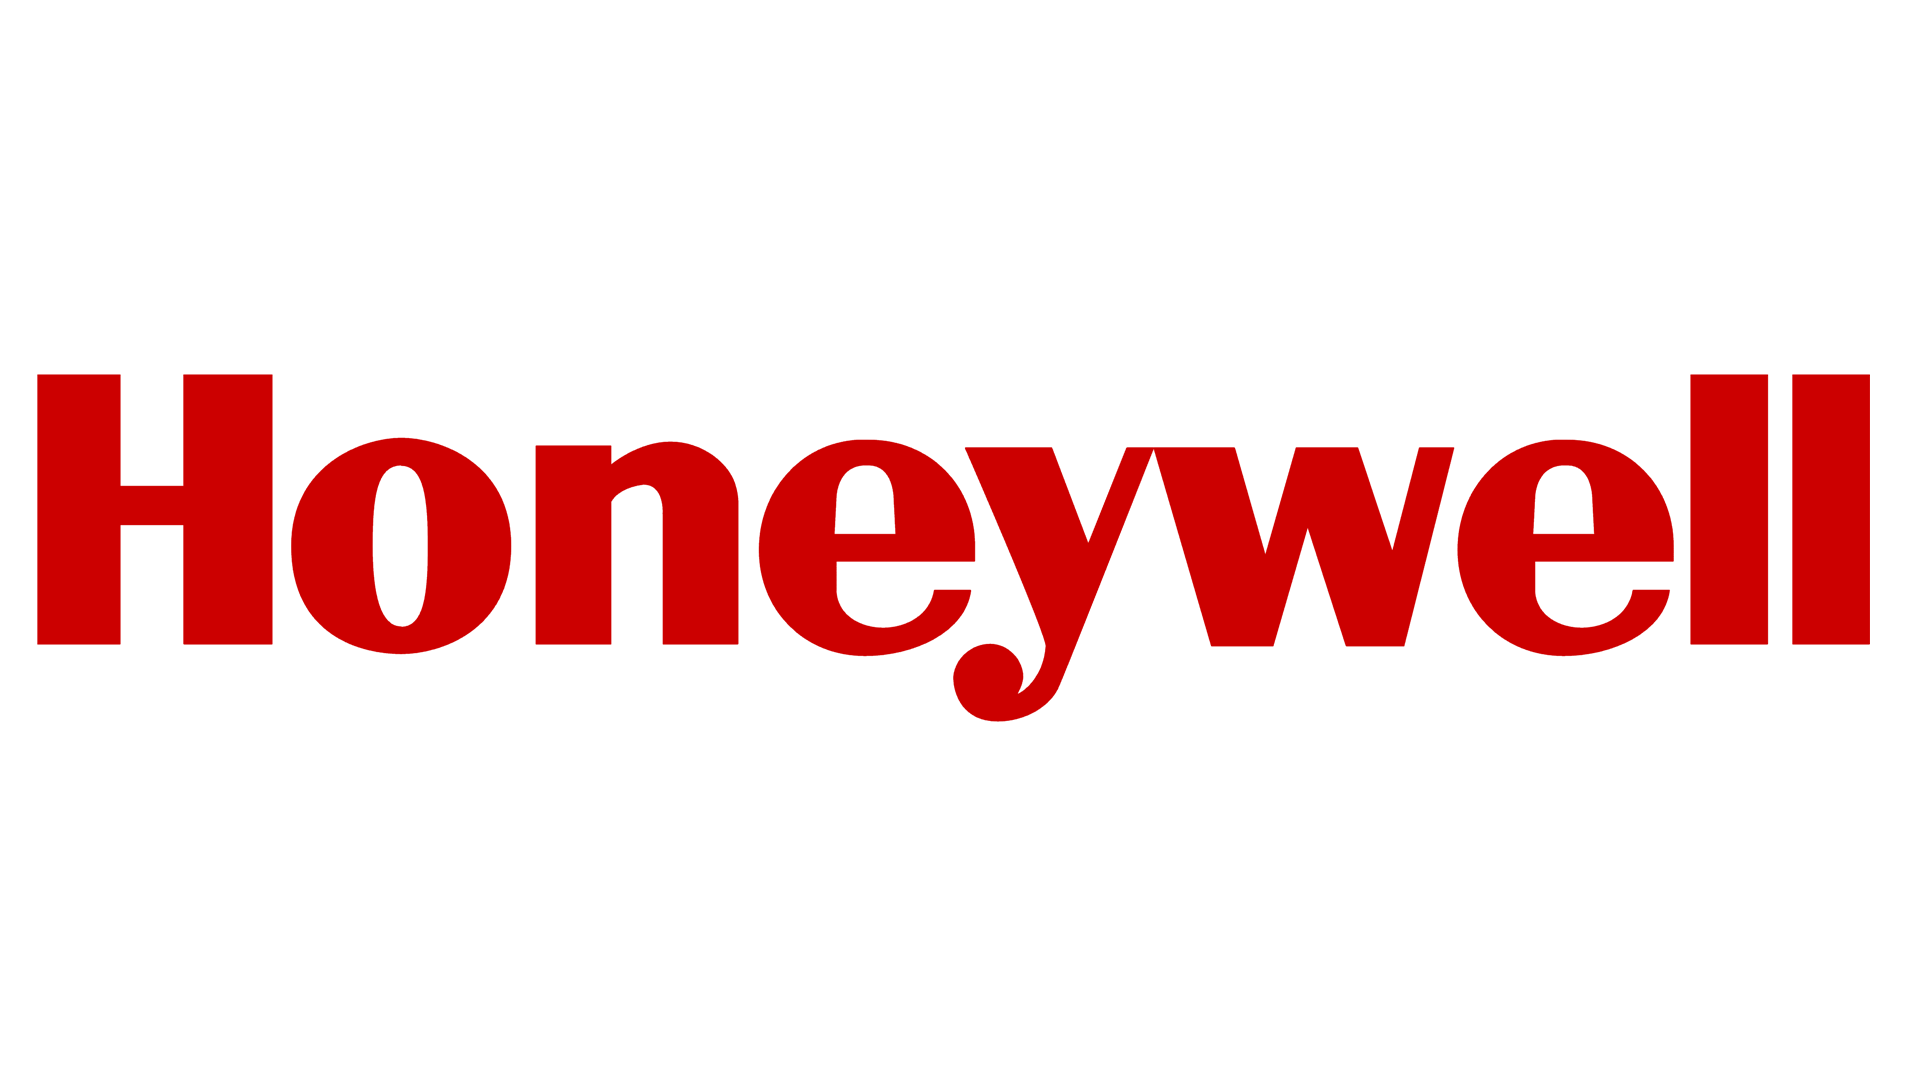 Honeywell-logo, Honeywell-symbool, betekenis, geschiedenis en evolutie